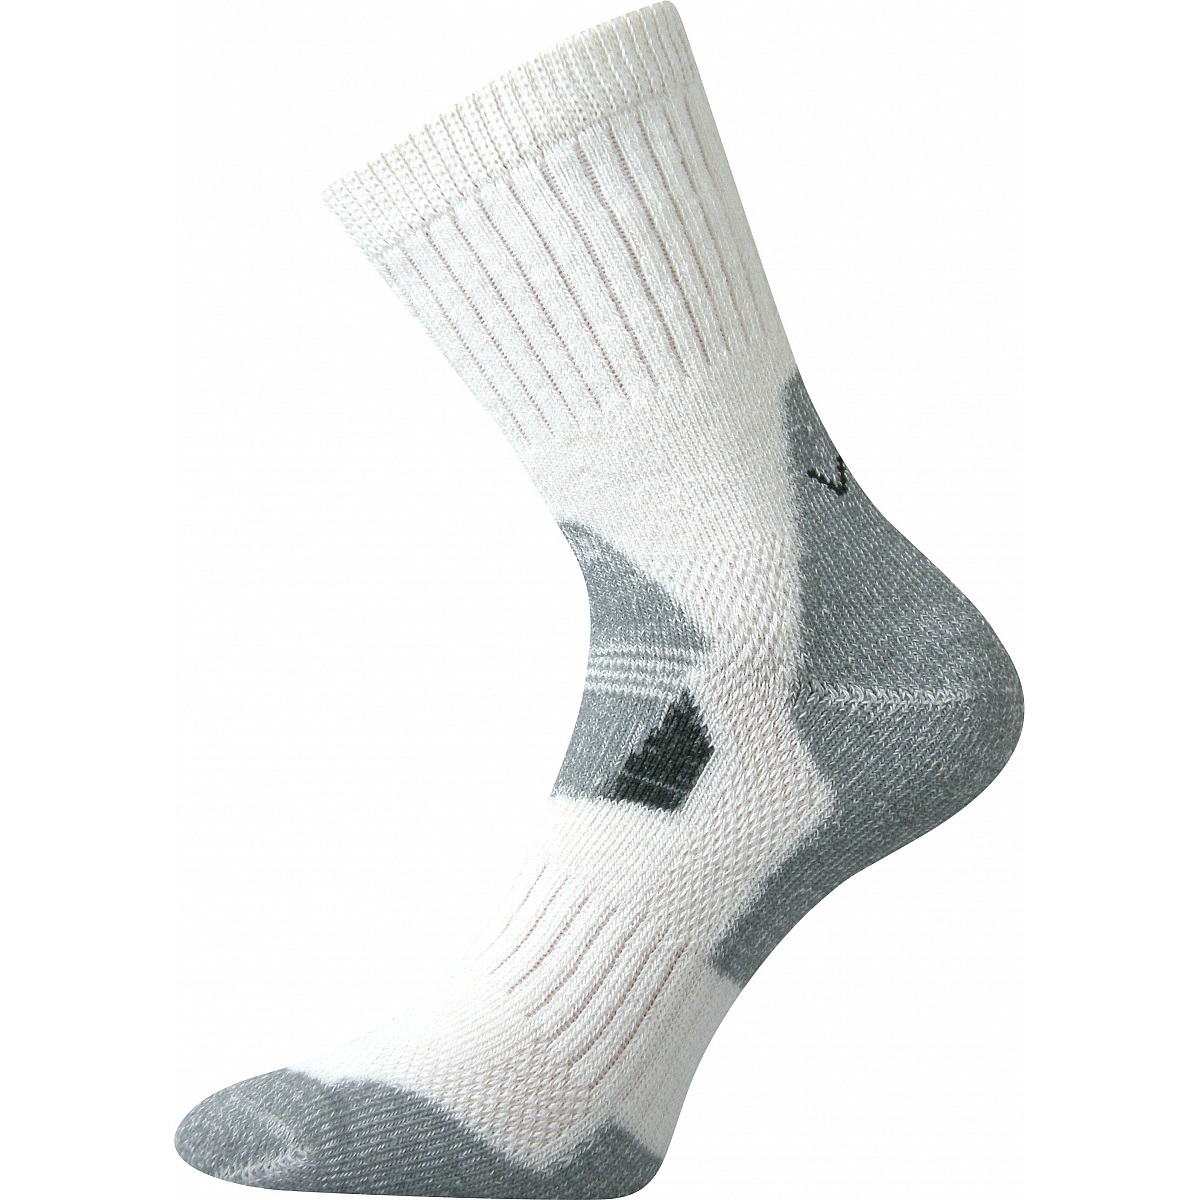 Extra teplé vlněné ponožky Voxx Stabil - bílé-šedé, 39-42